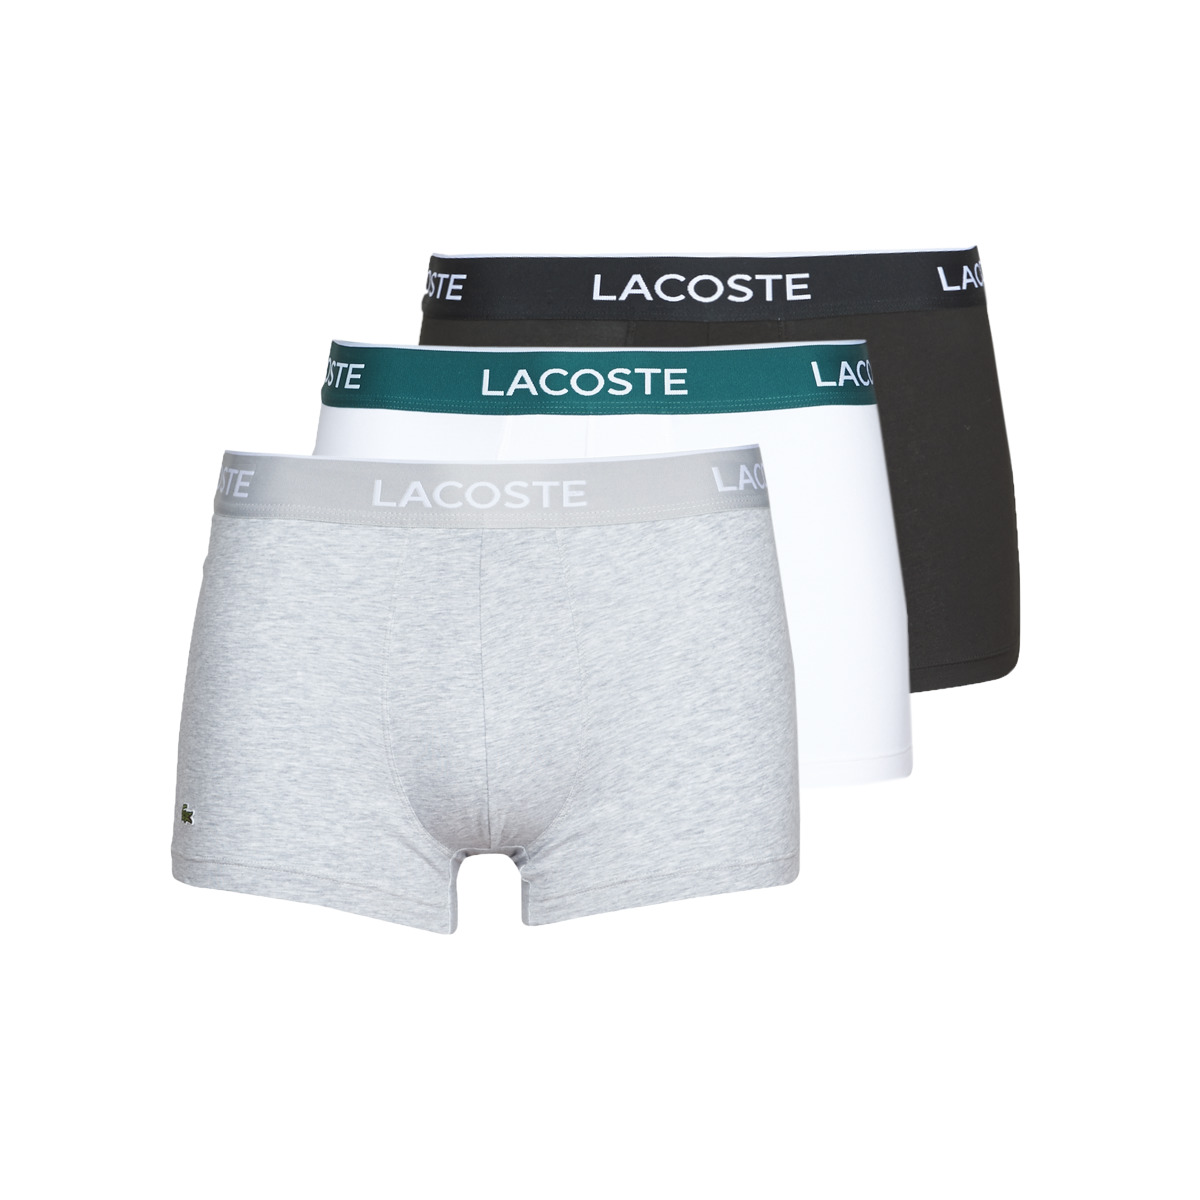 lacoste underwear size chart